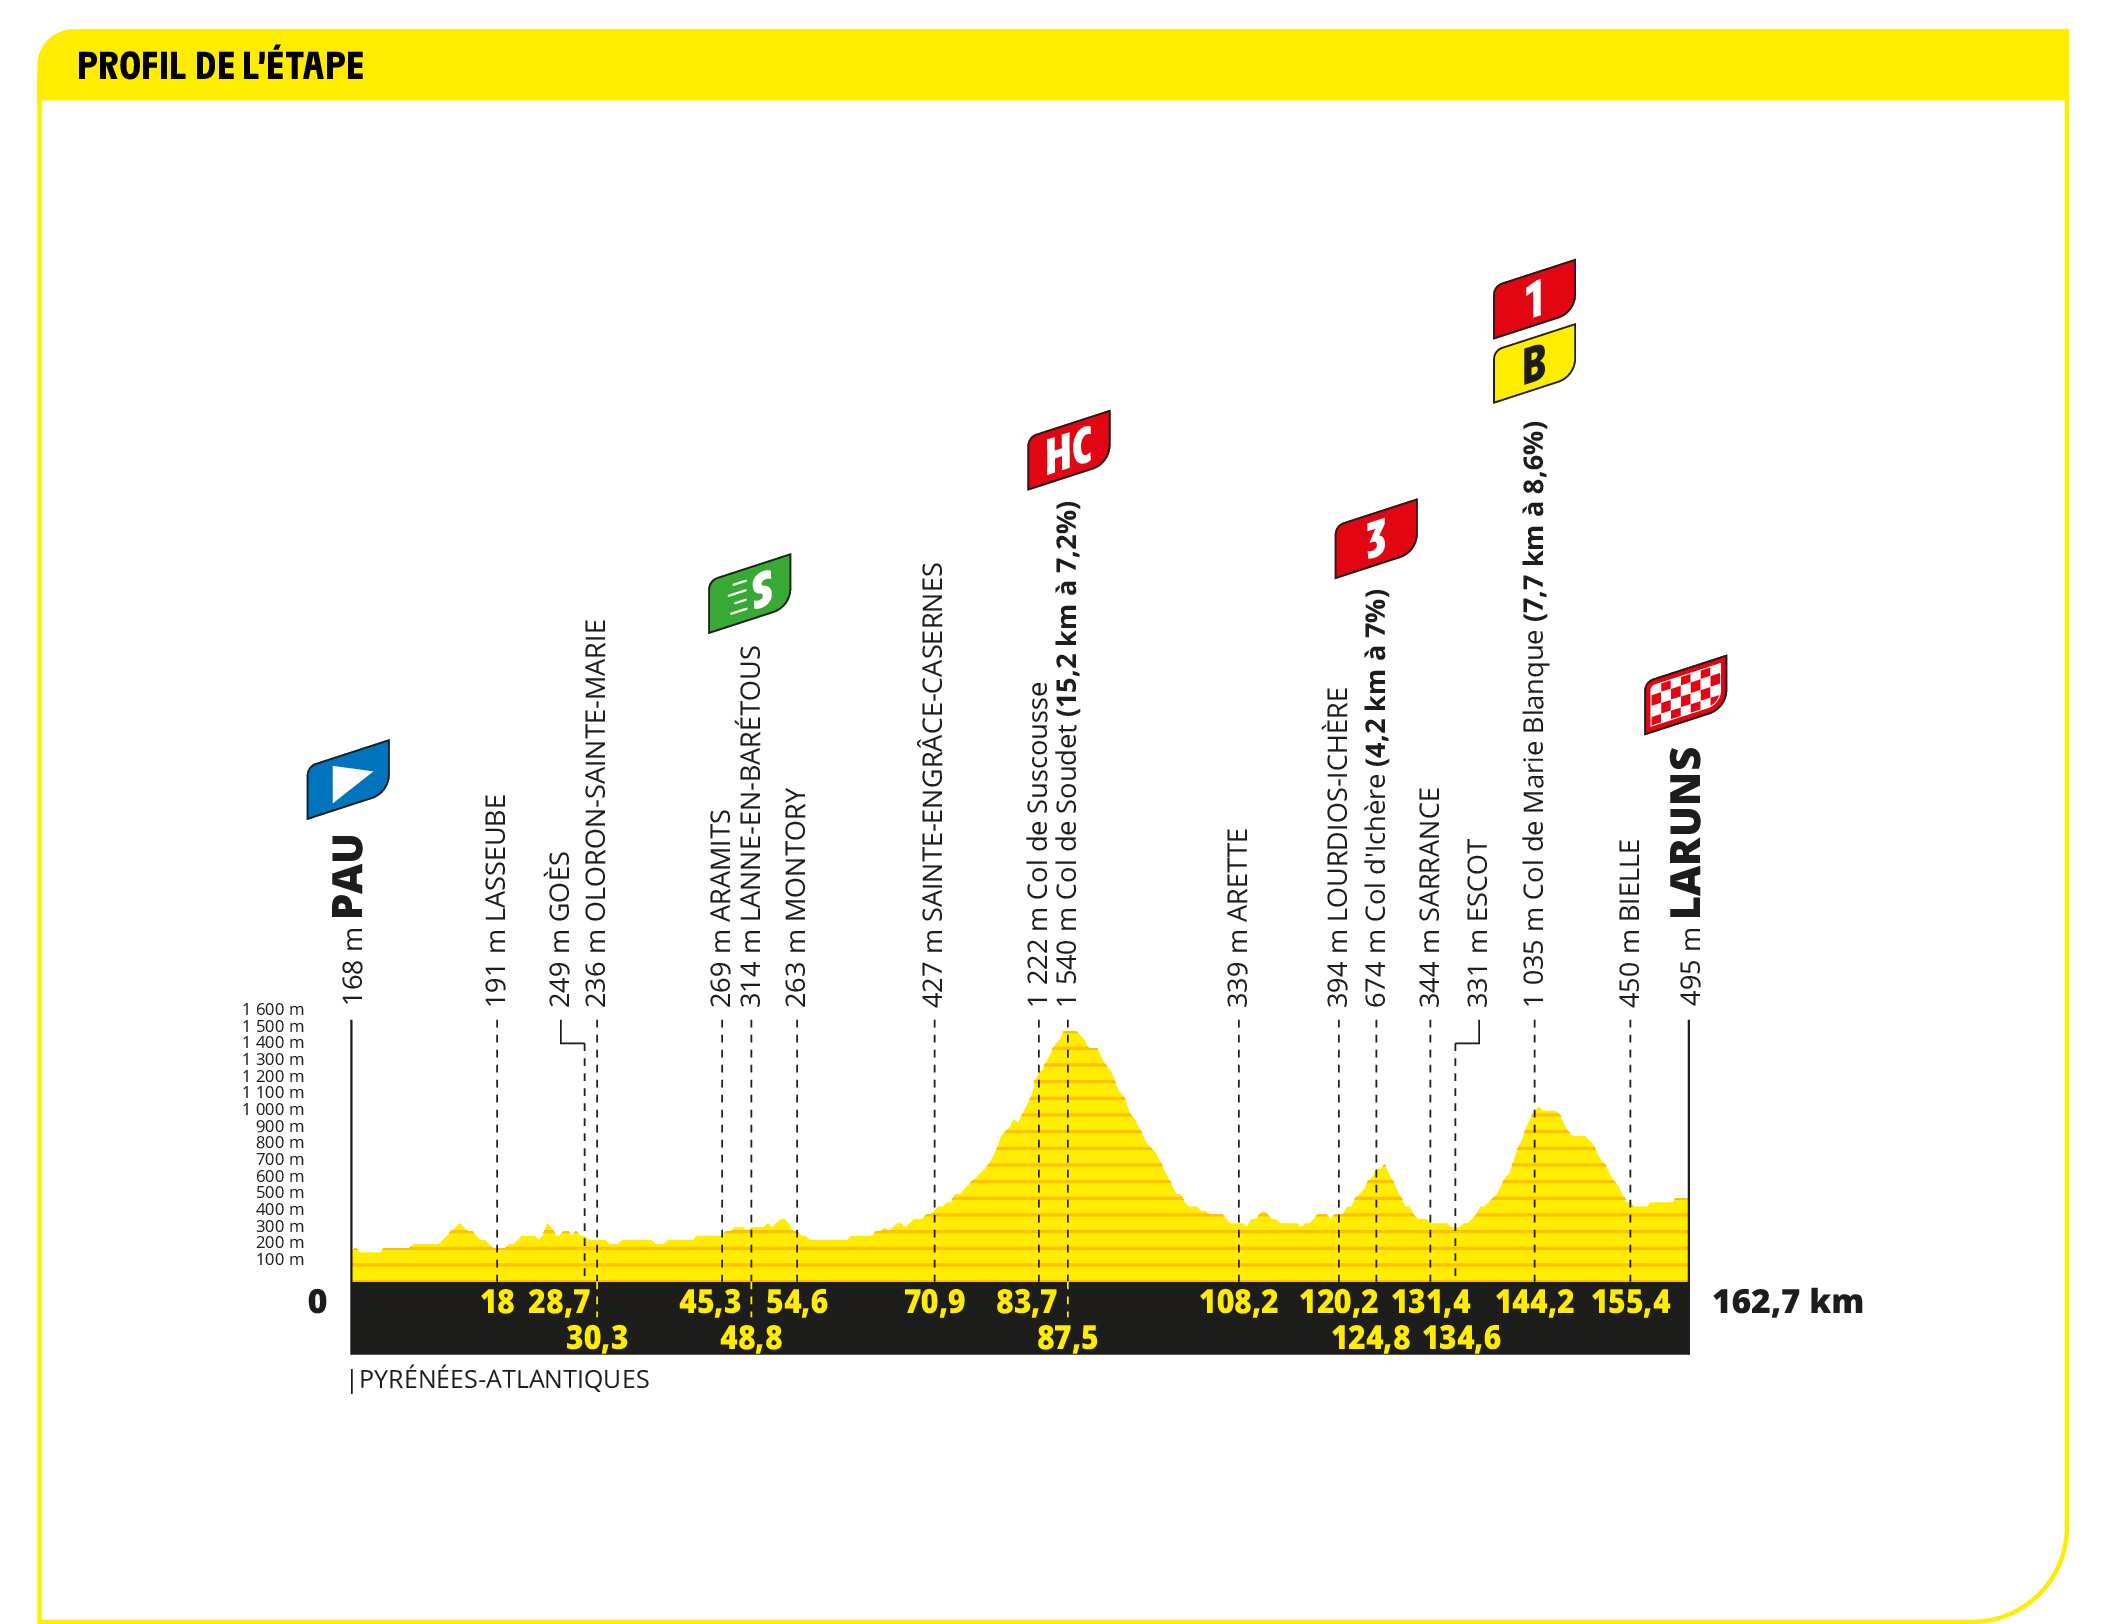 Tour de France 2023: Stage 6 Preview - Riders Face The Col du Tourmalet